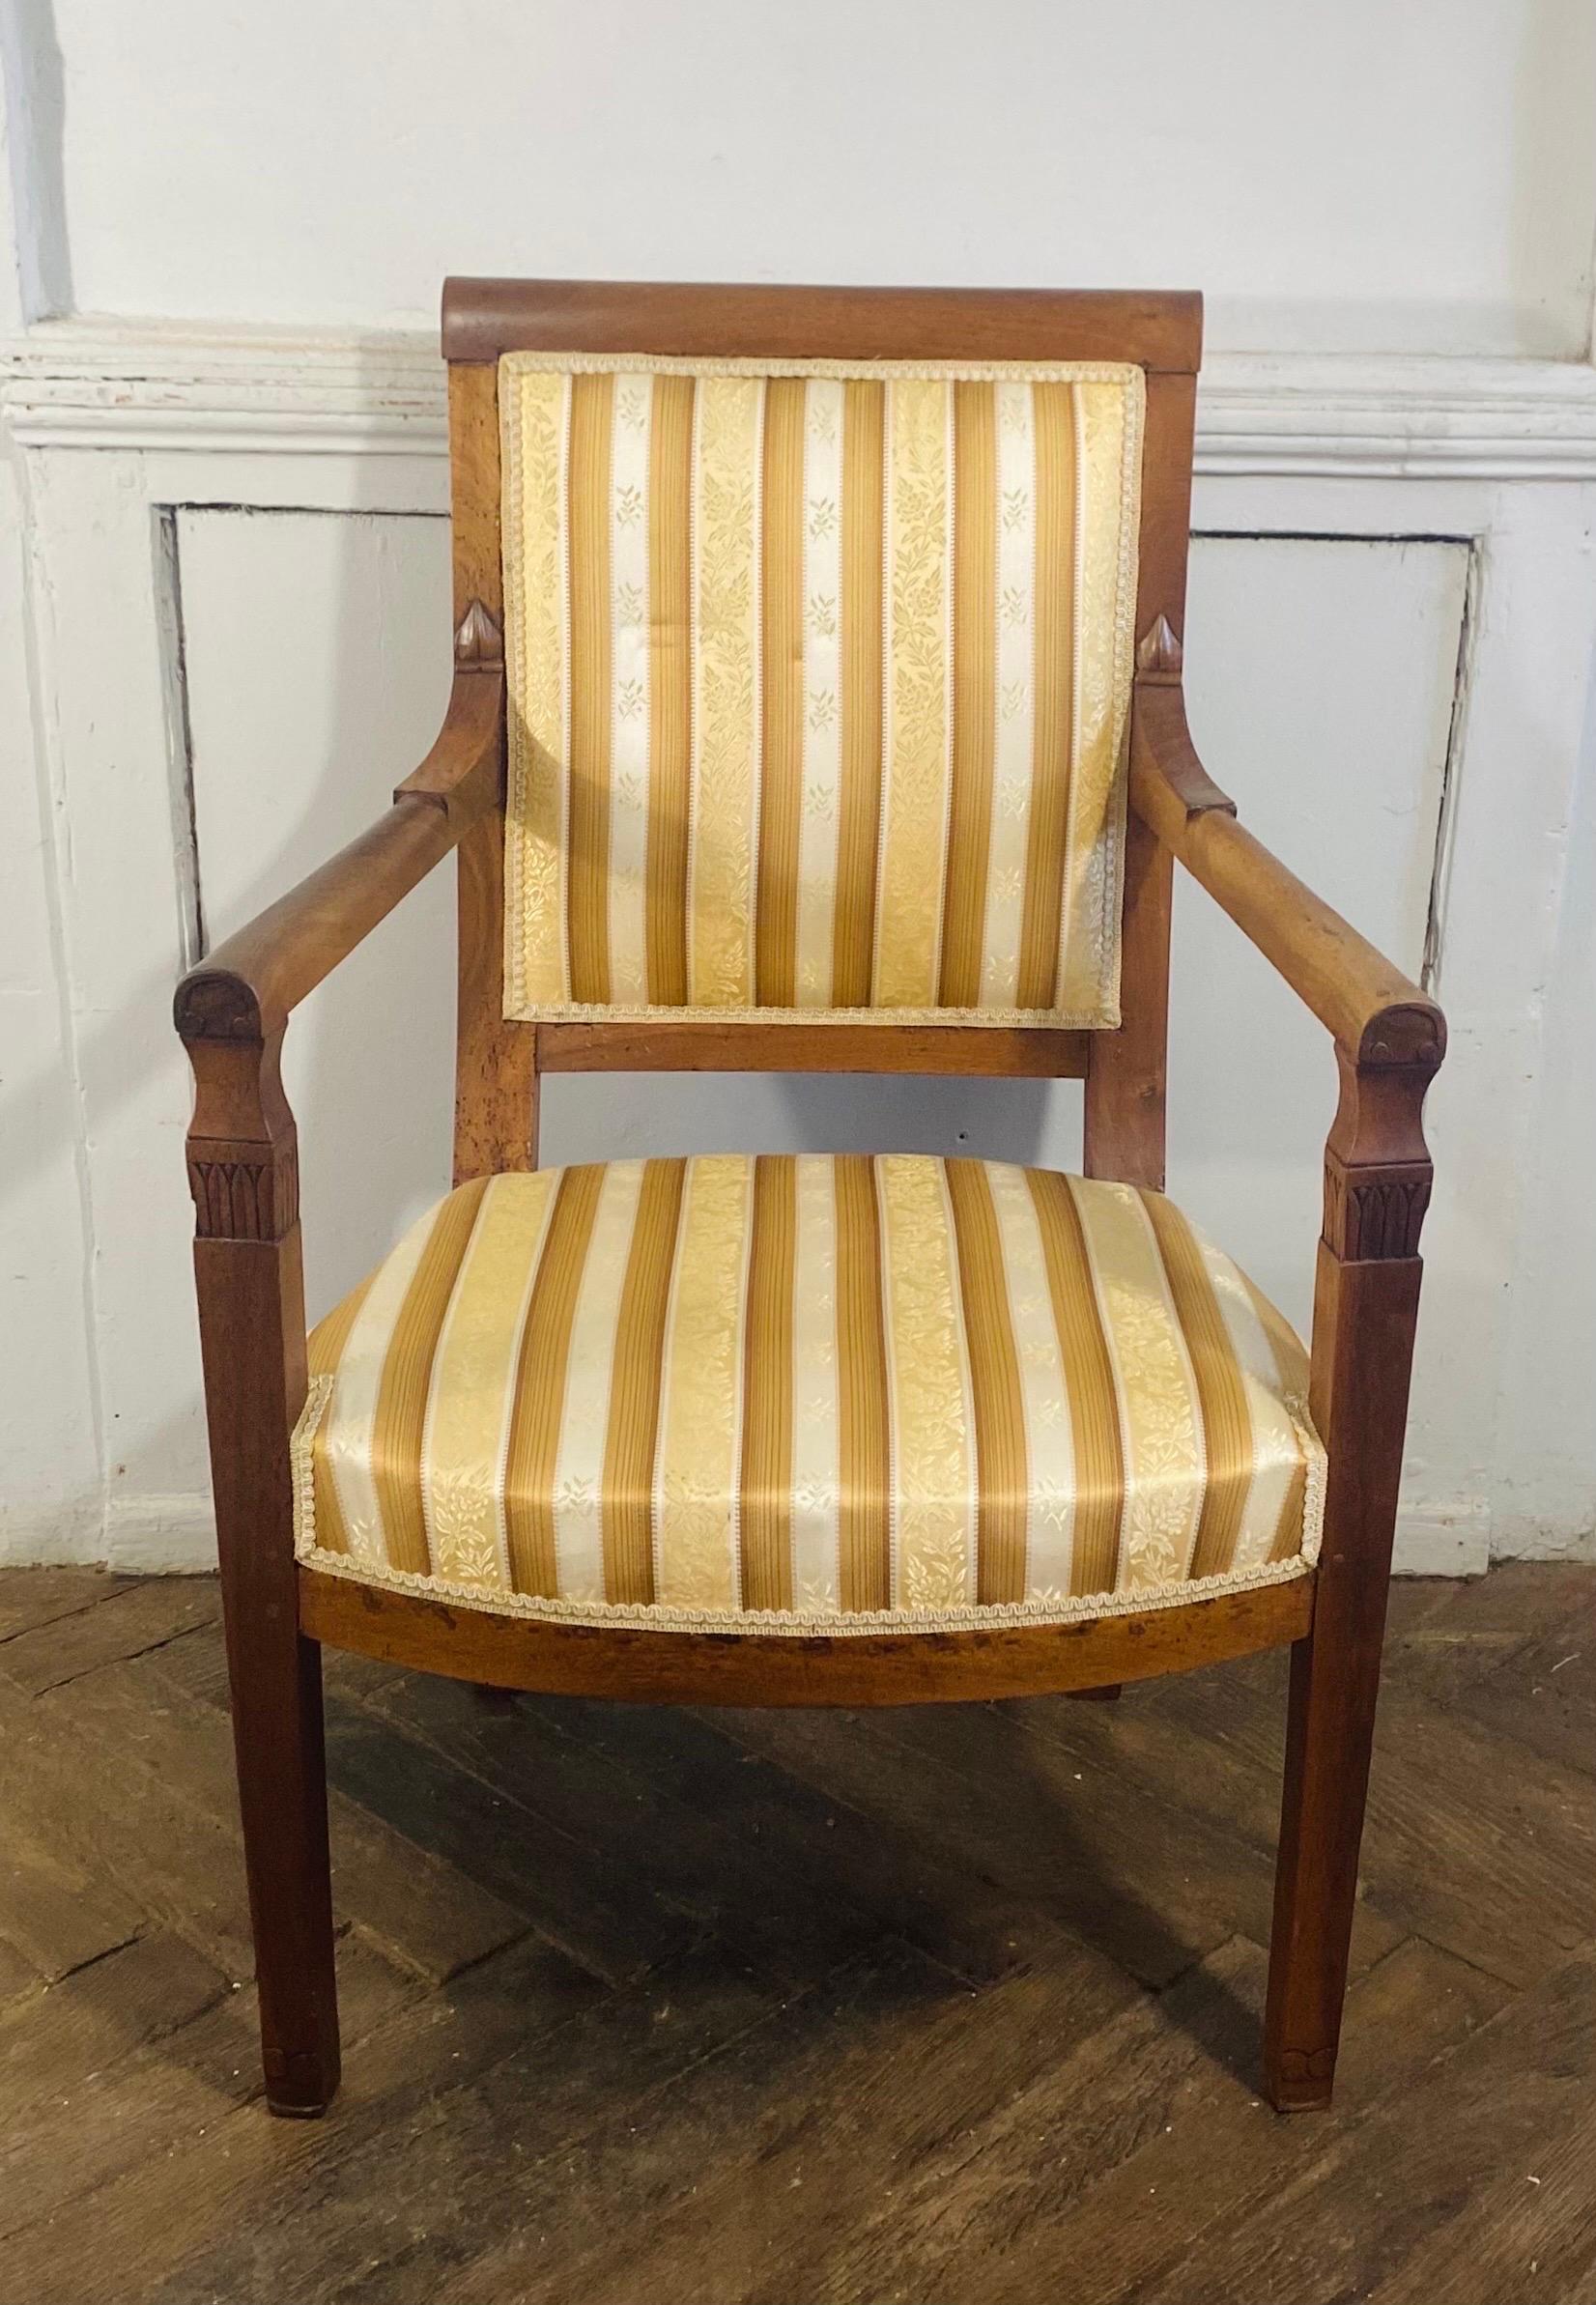 Sehr hübscher Sessel aus Buche mit einem hübschen Wandteppich in Gold- und Weißtönen im Directoire-Stil - 19.
Die sehr leuchtende weiß-goldene Polsterung macht ihn zu einem eleganten und raffinierten Sitzmöbel.
Dieser klassische Sessel kann sowohl